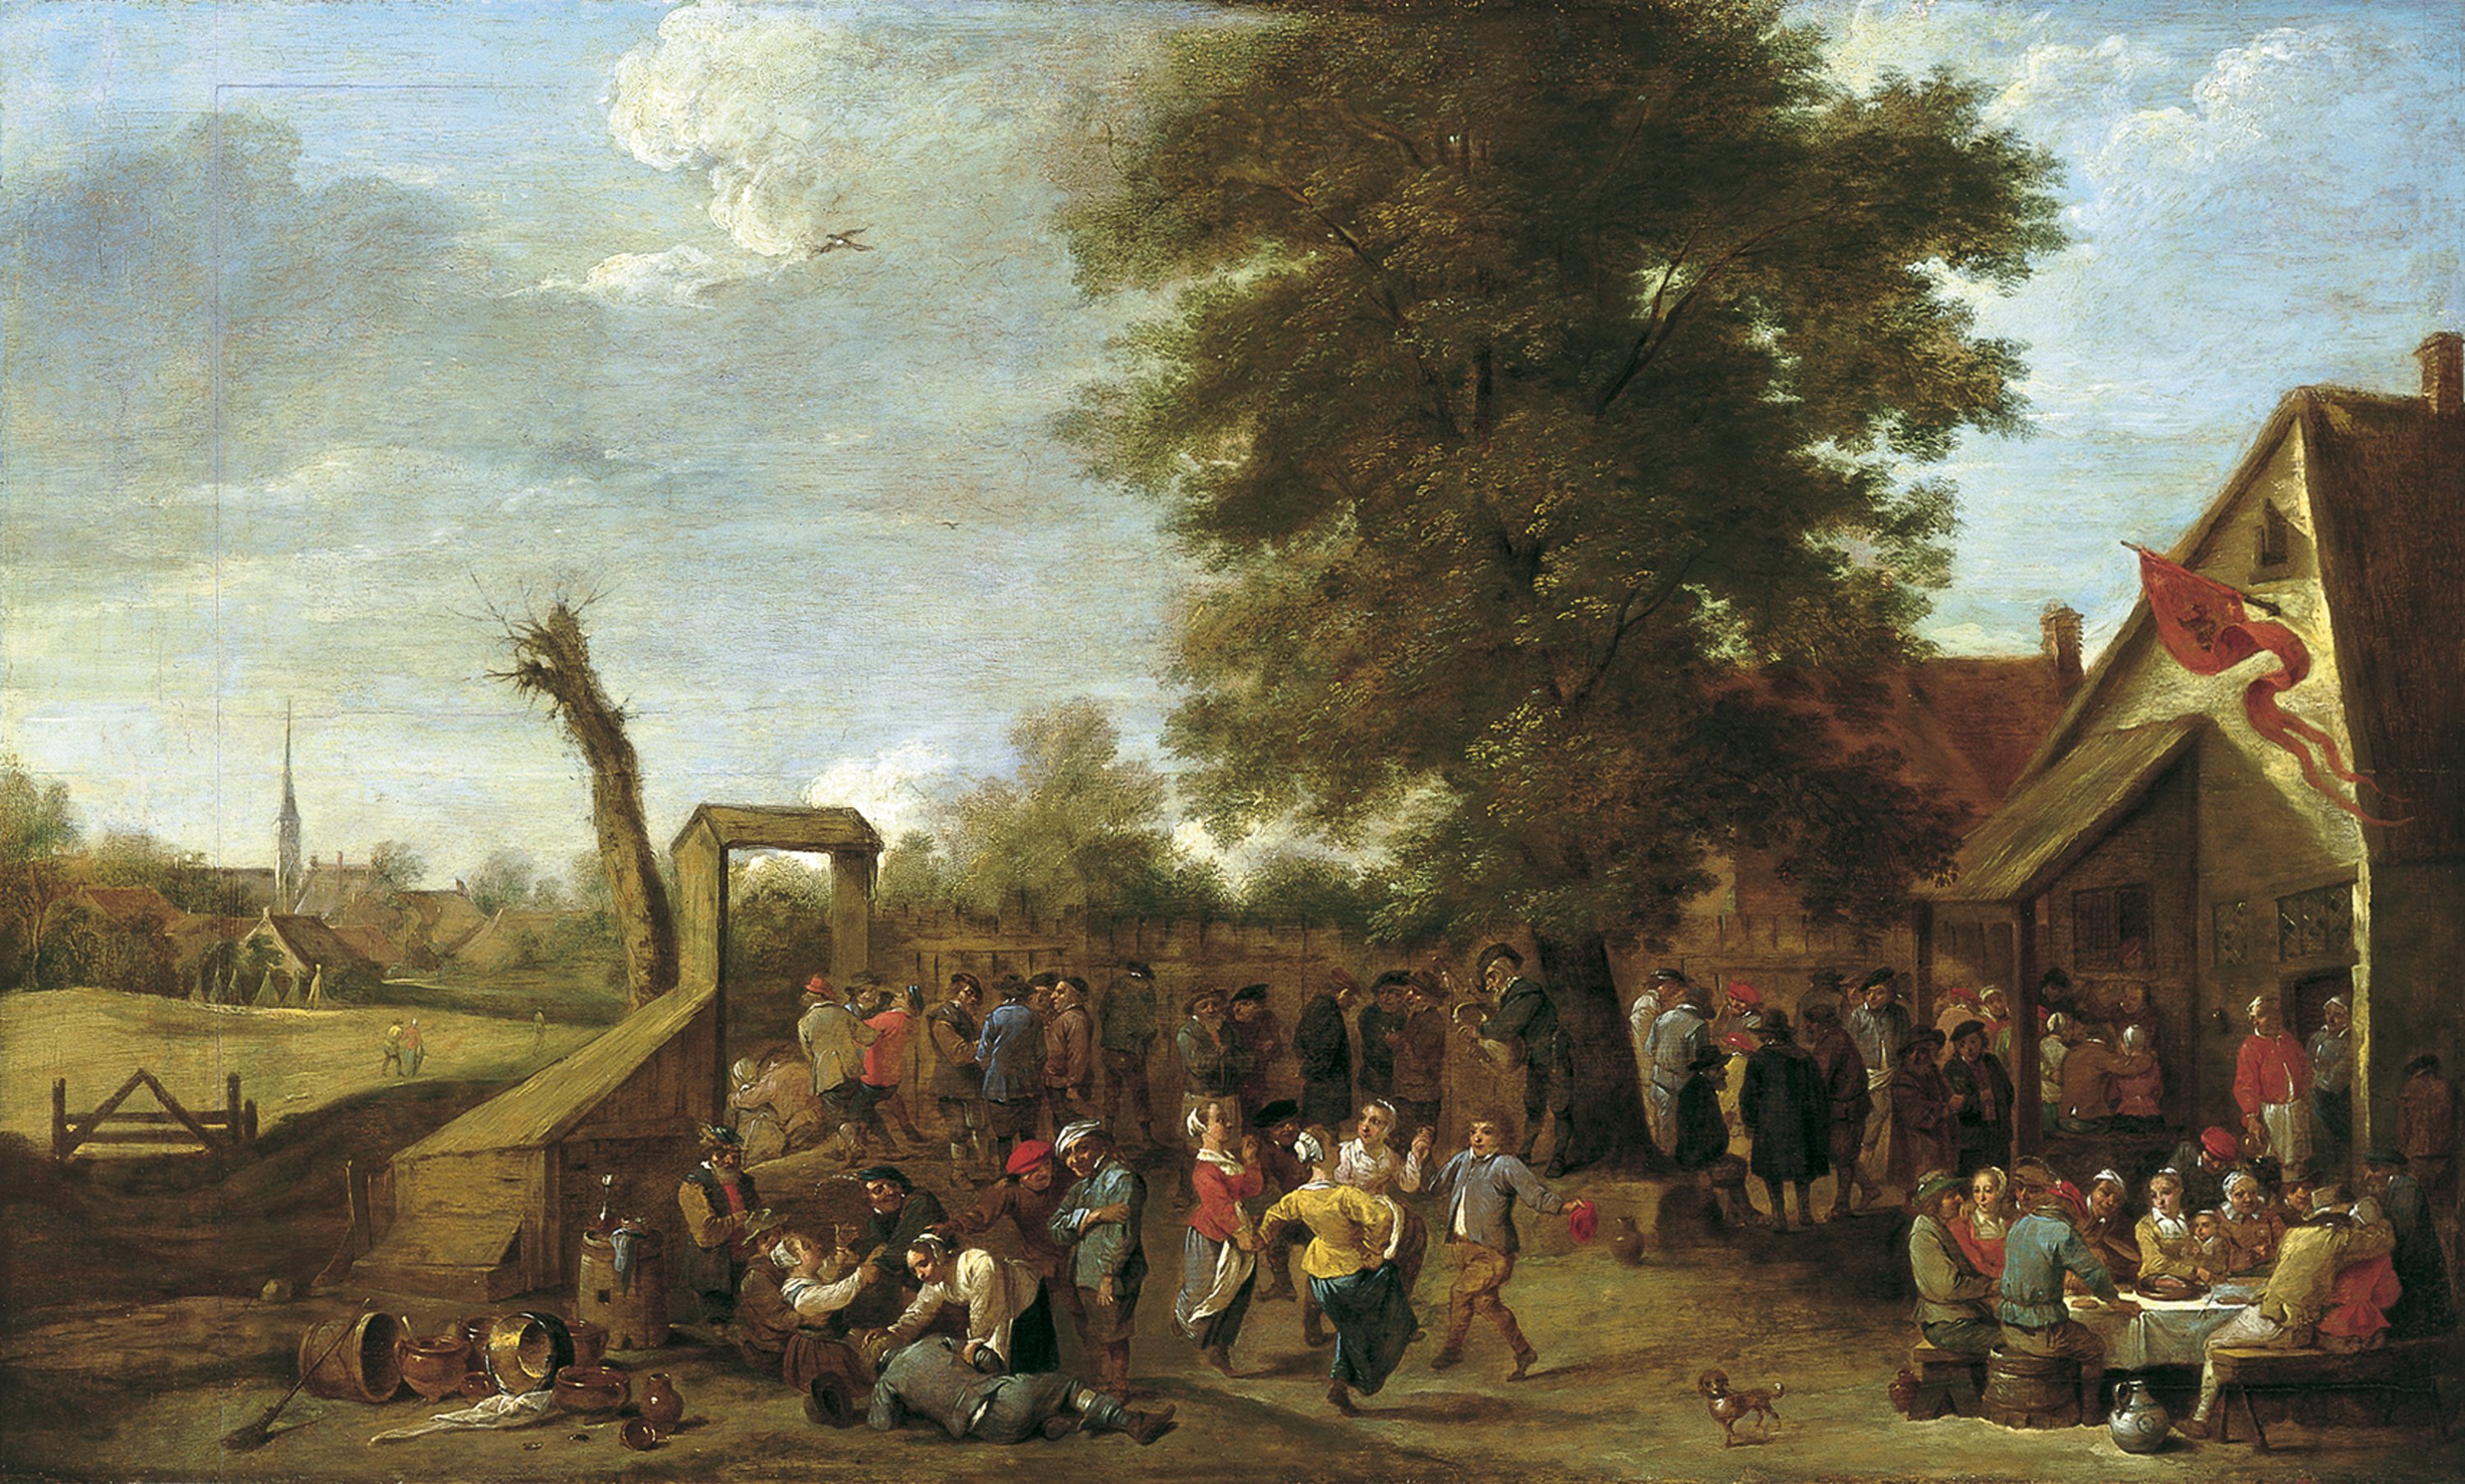 The Village Fête. Fiesta campesina, c. 1650